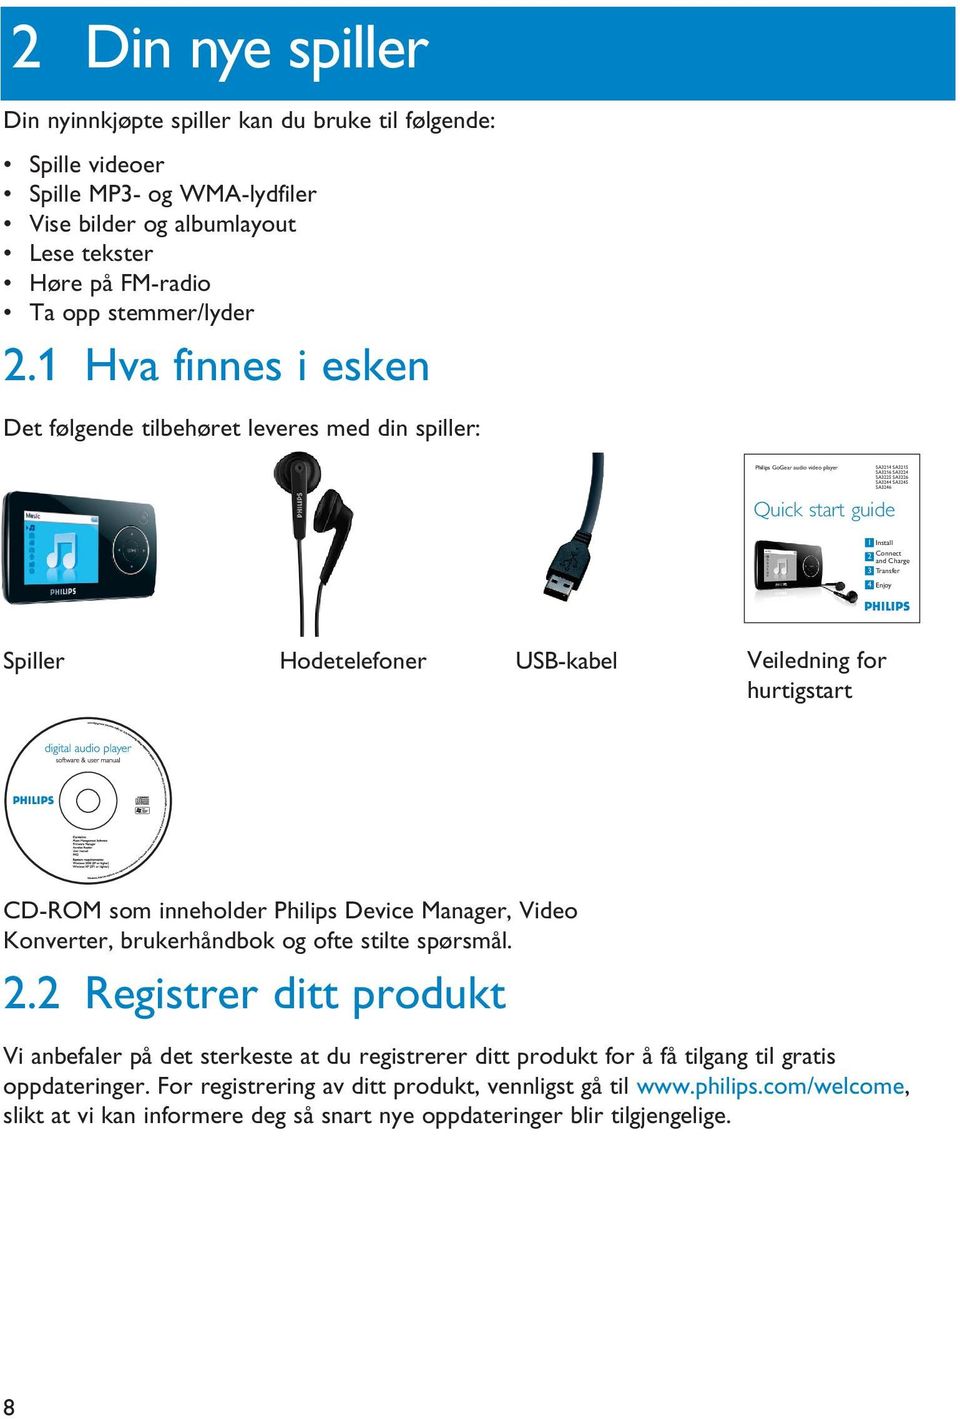 Connect and Charge 3 Transfer 4 Enjoy Spiller Hodetelefoner USB-kabel Veiledning for hurtigstart CD-ROM som inneholder Philips Device Manager, Video Konverter, brukerhåndbok og ofte stilte spørsmål.